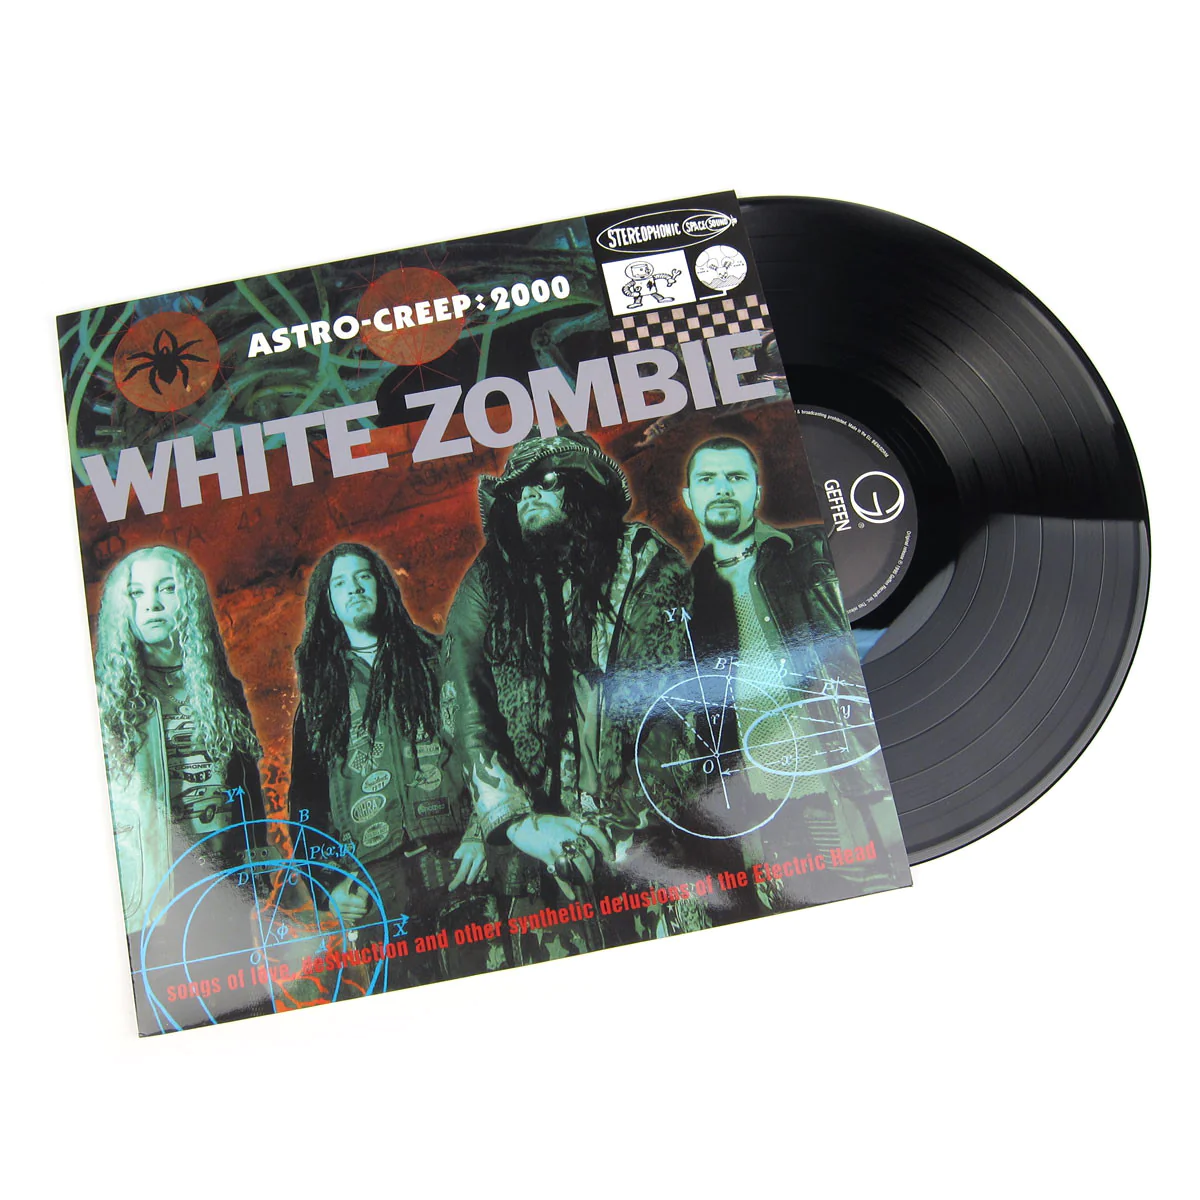 WHITE ZOMBIE - Astro-Creep: 2000 Vinyl - JWrayRecords